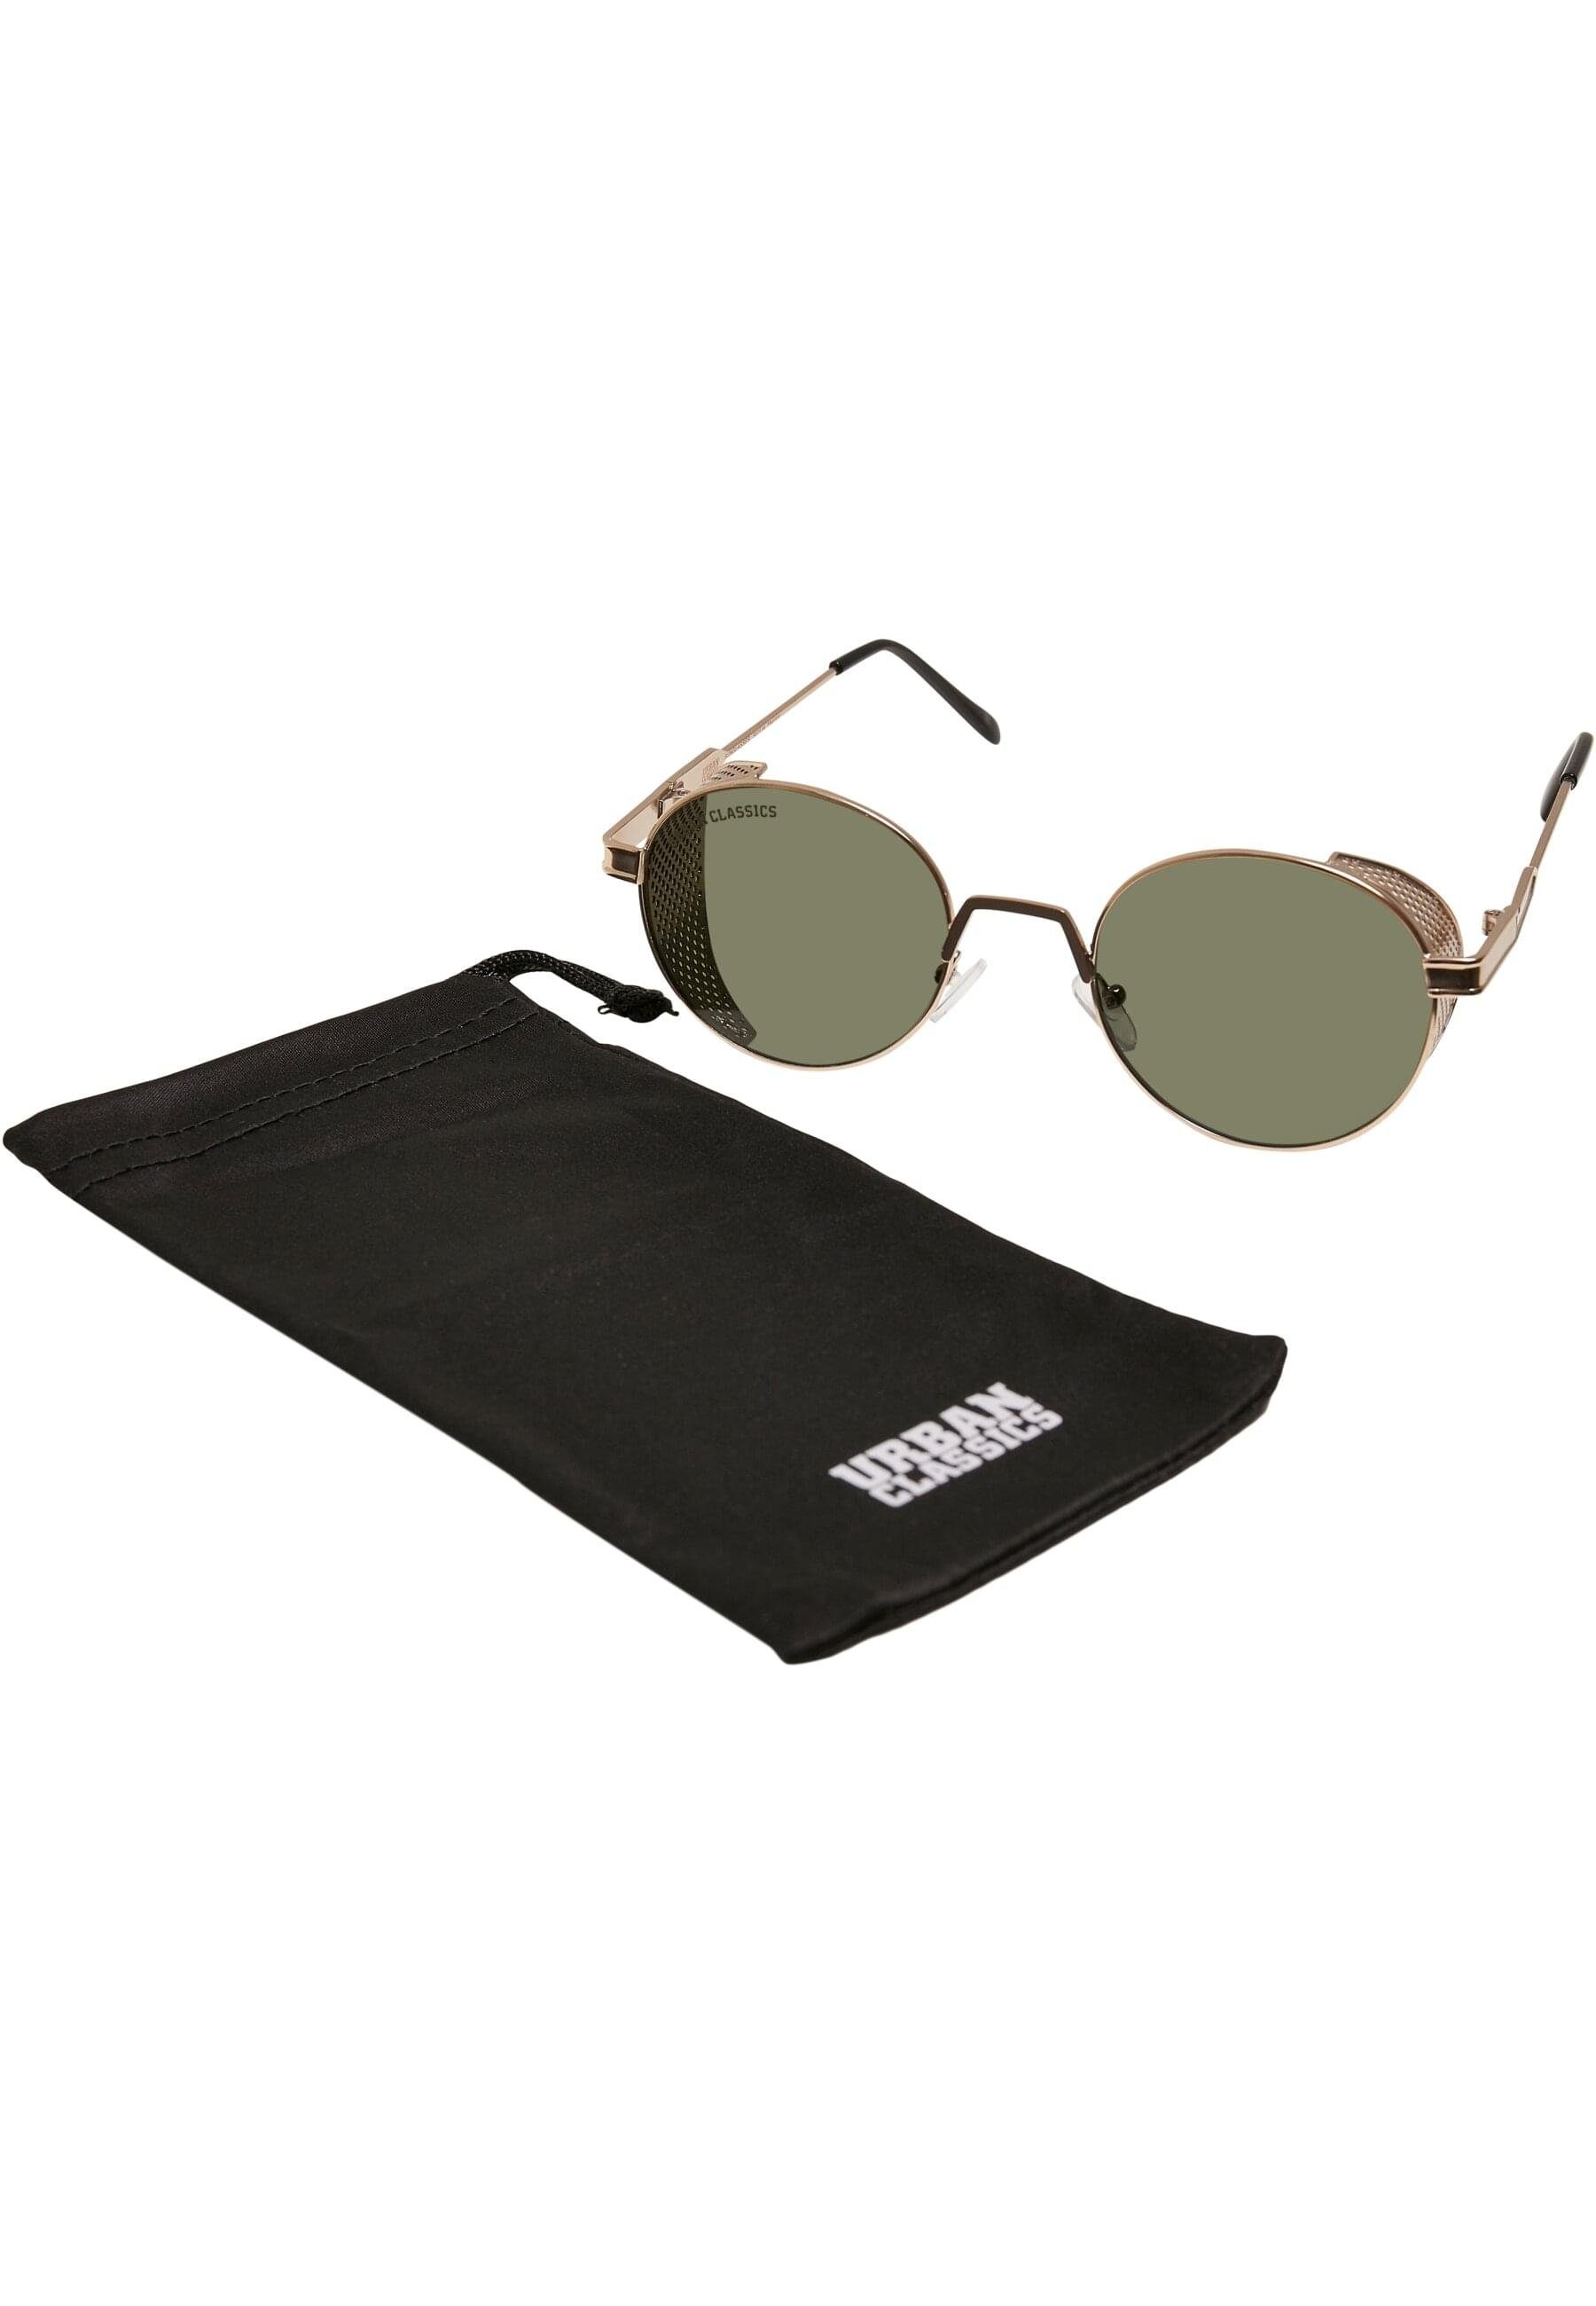 URBAN CLASSICS Sonnenbrille Urban Classics Unisex Sunglasses Sicilia